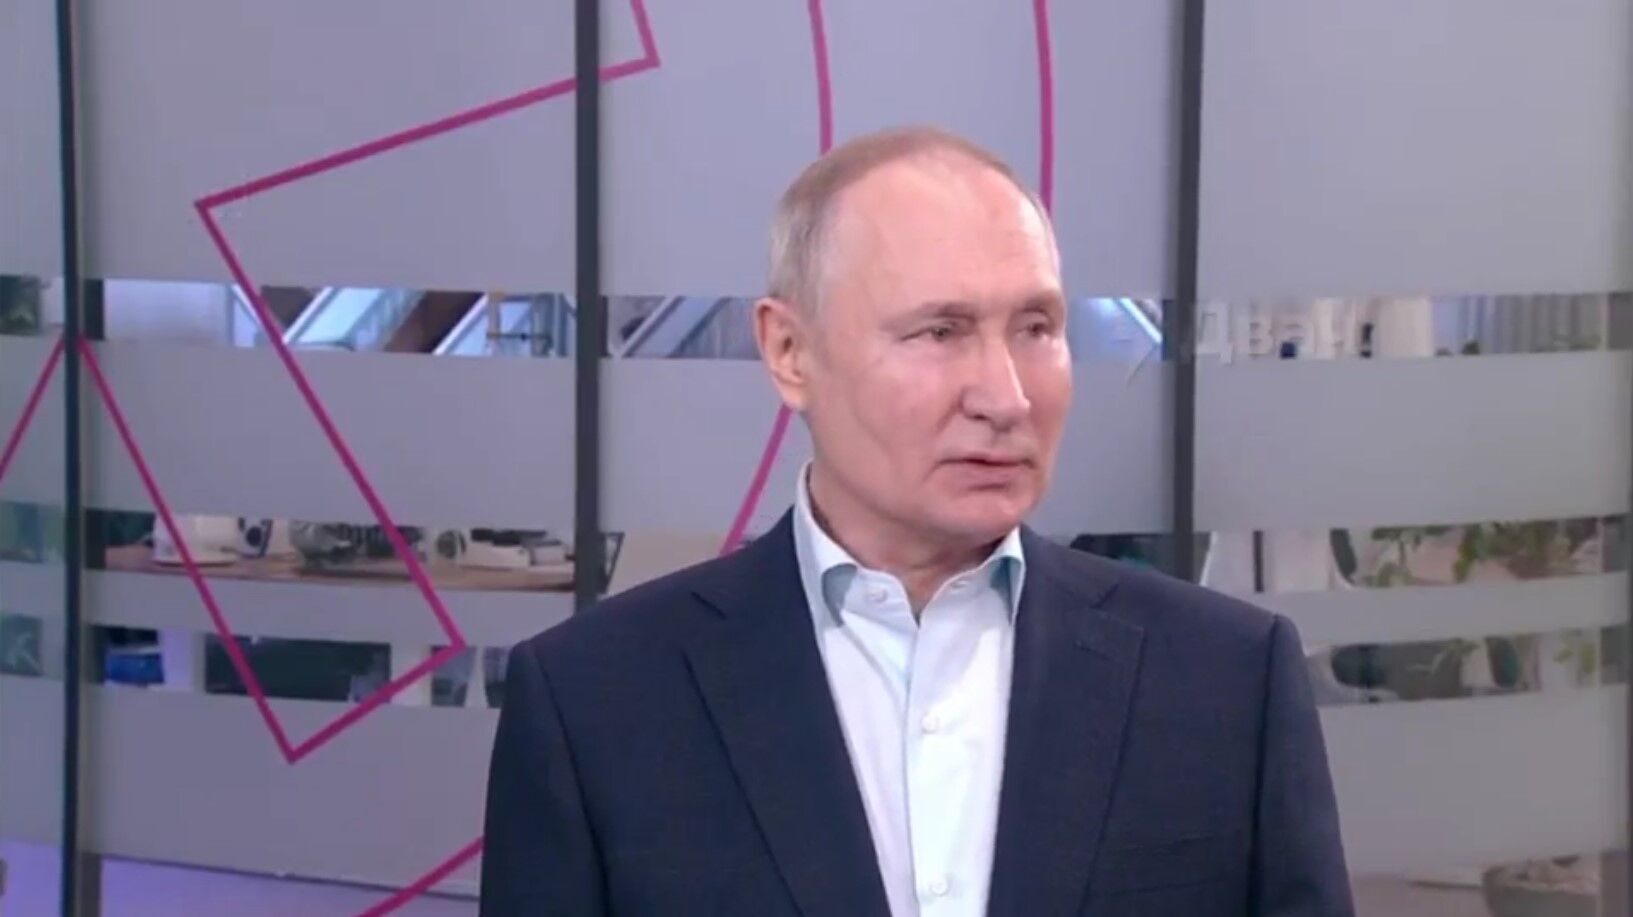 Перепутал с ЧВК ''Вагнер''? Путин придумал страшилку о ''заградотрядах'' в ВСУ, его высмеяли. Видео